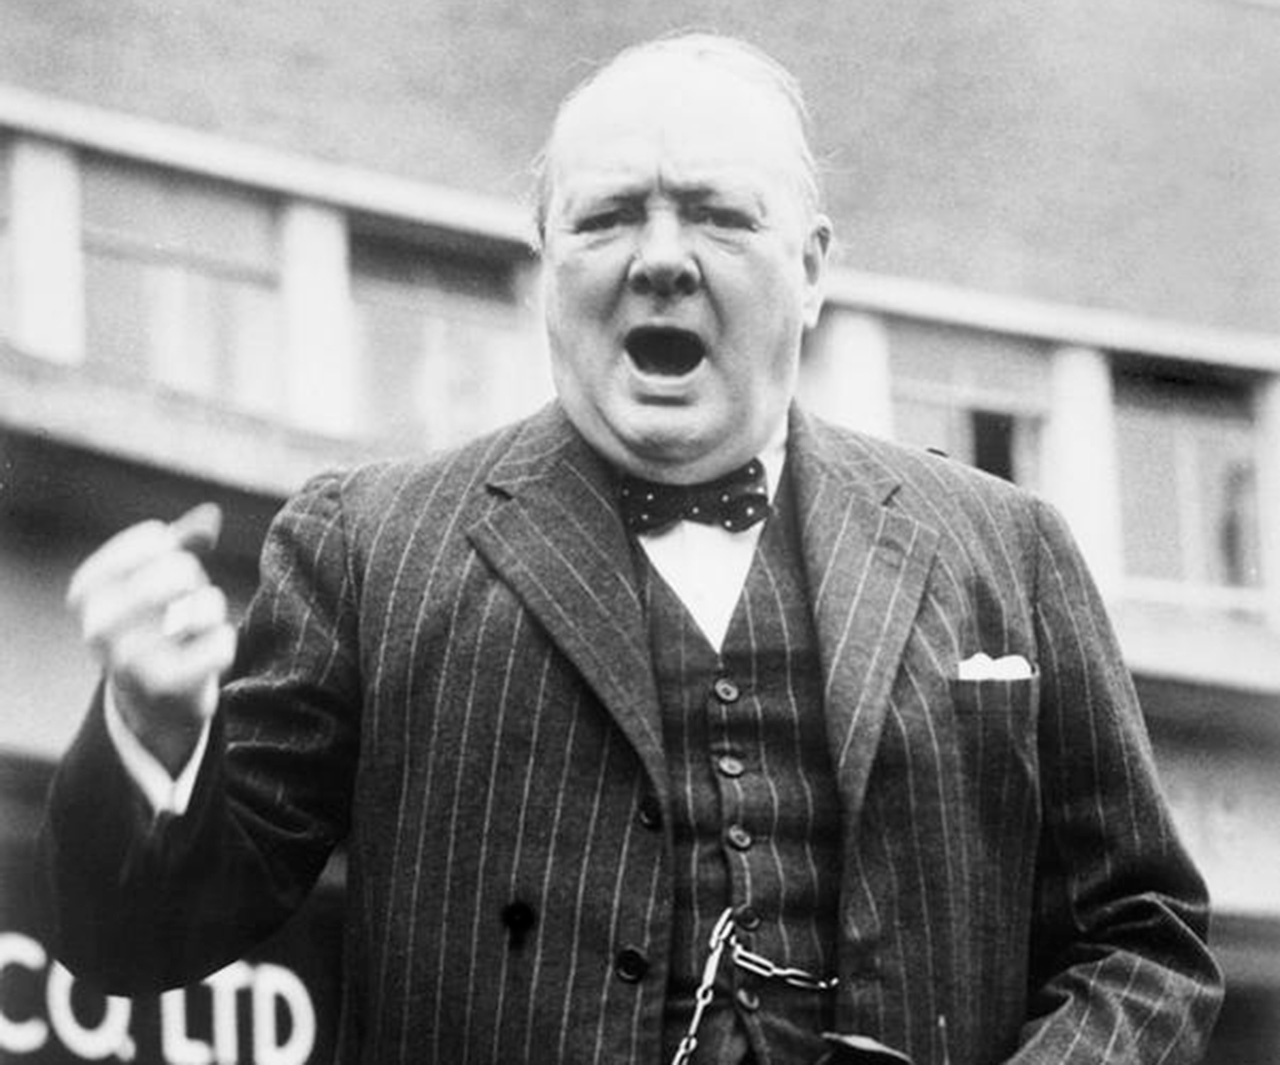 Уинстон Черчилль в июле 1945 г. планировал напасть, а в 1947 году нанести атомный удар по Советскому Союзу. В результате отгородился от СССР «железным занавесом».